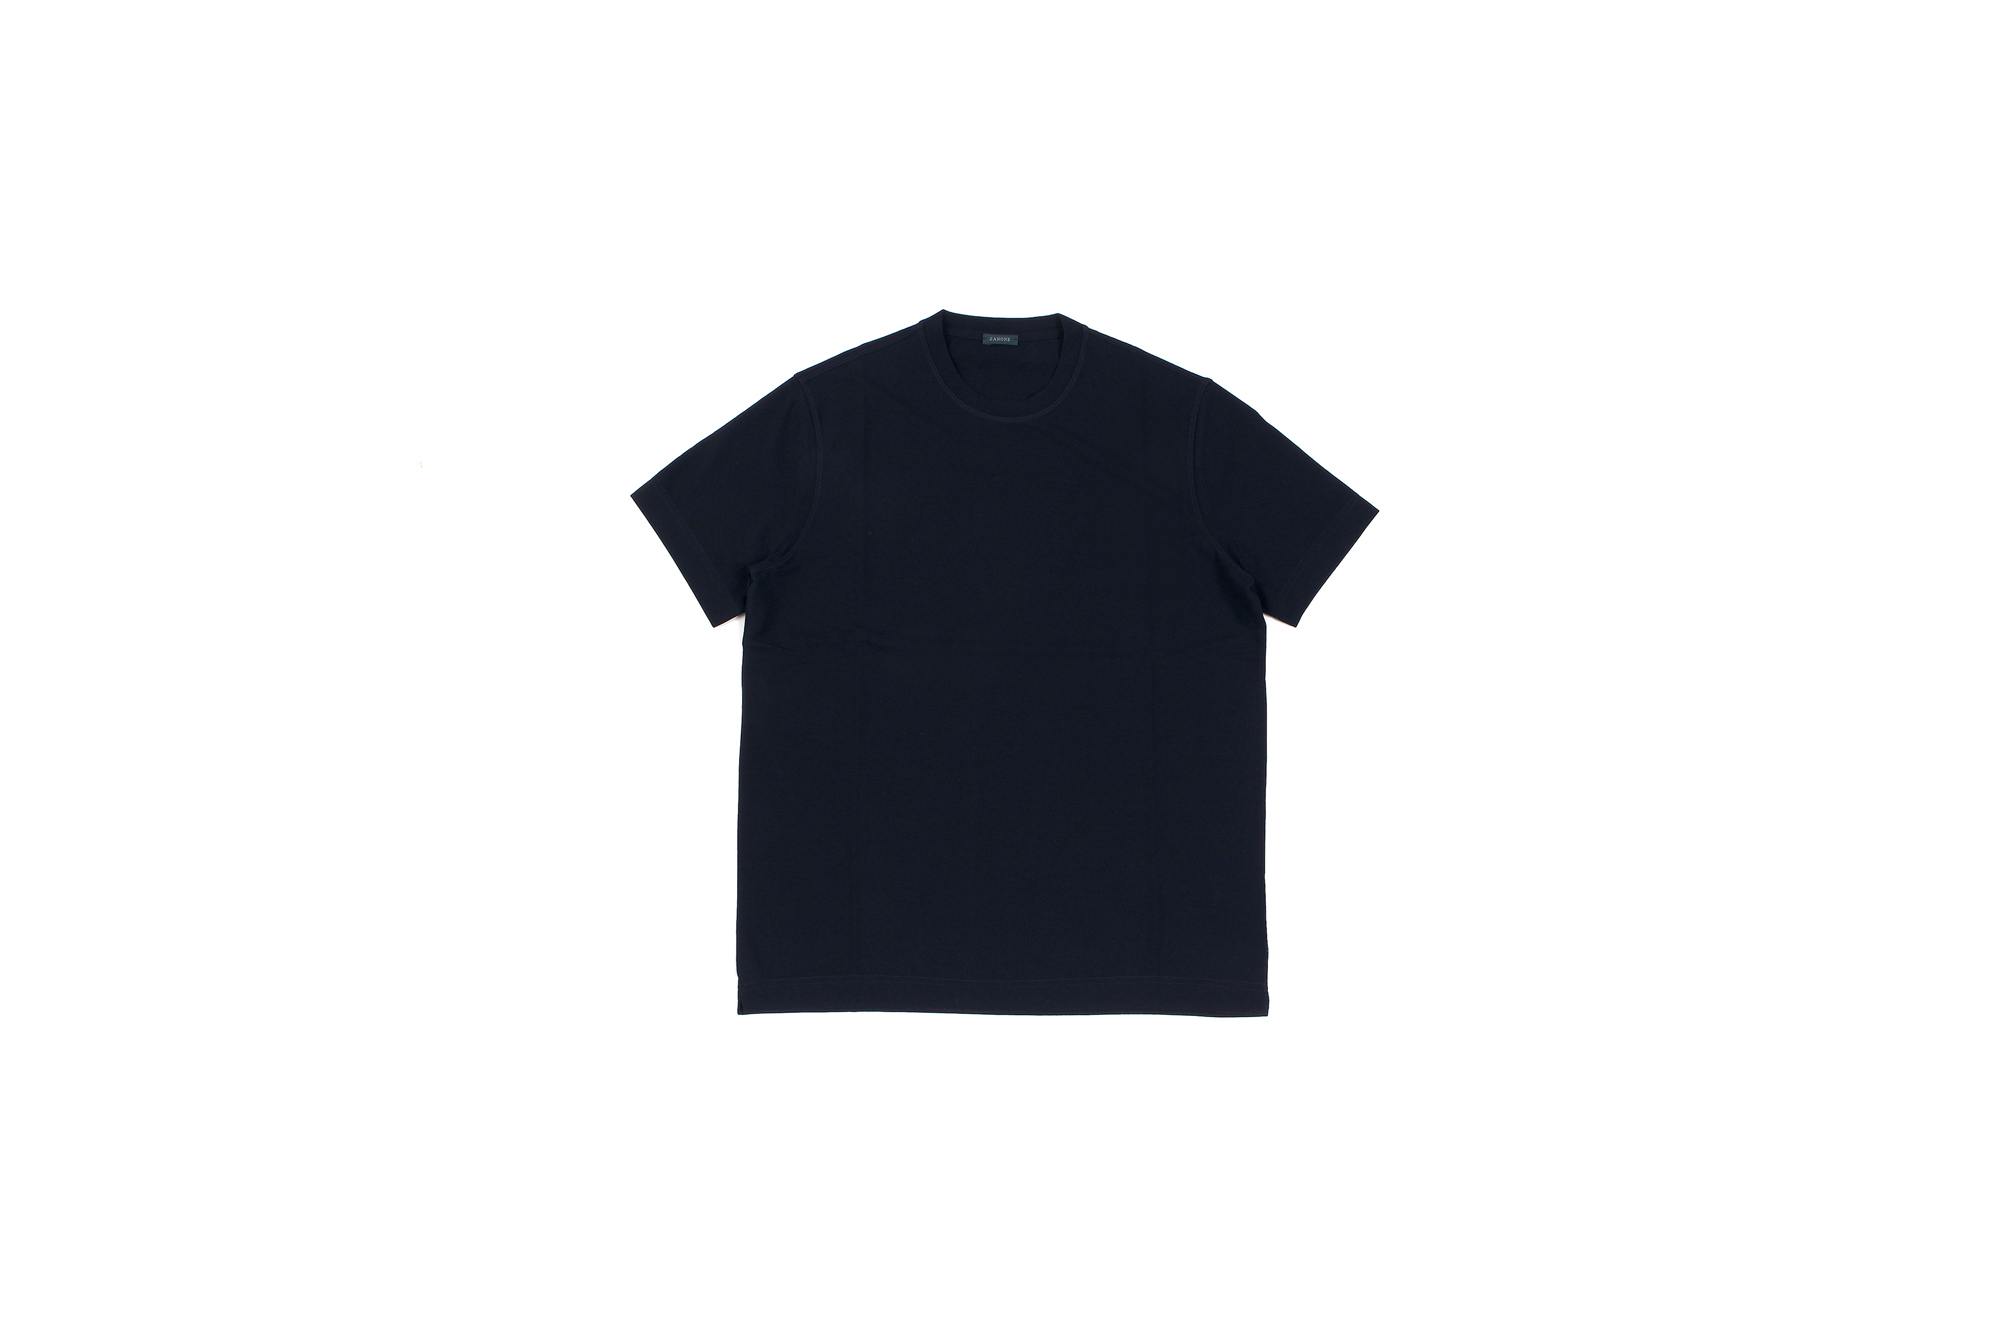 ZANONE(ザノーネ) Crew Neck T-shirt (クルーネックTシャツ) ice cotton アイスコットン Tシャツ NAVY (ネイビー・Z0542) MADE IN ITALY(イタリア製) 2020 春夏 【ご予約開始】愛知 名古屋 altoediritto アルトエデリット tee 夏Tシャツ